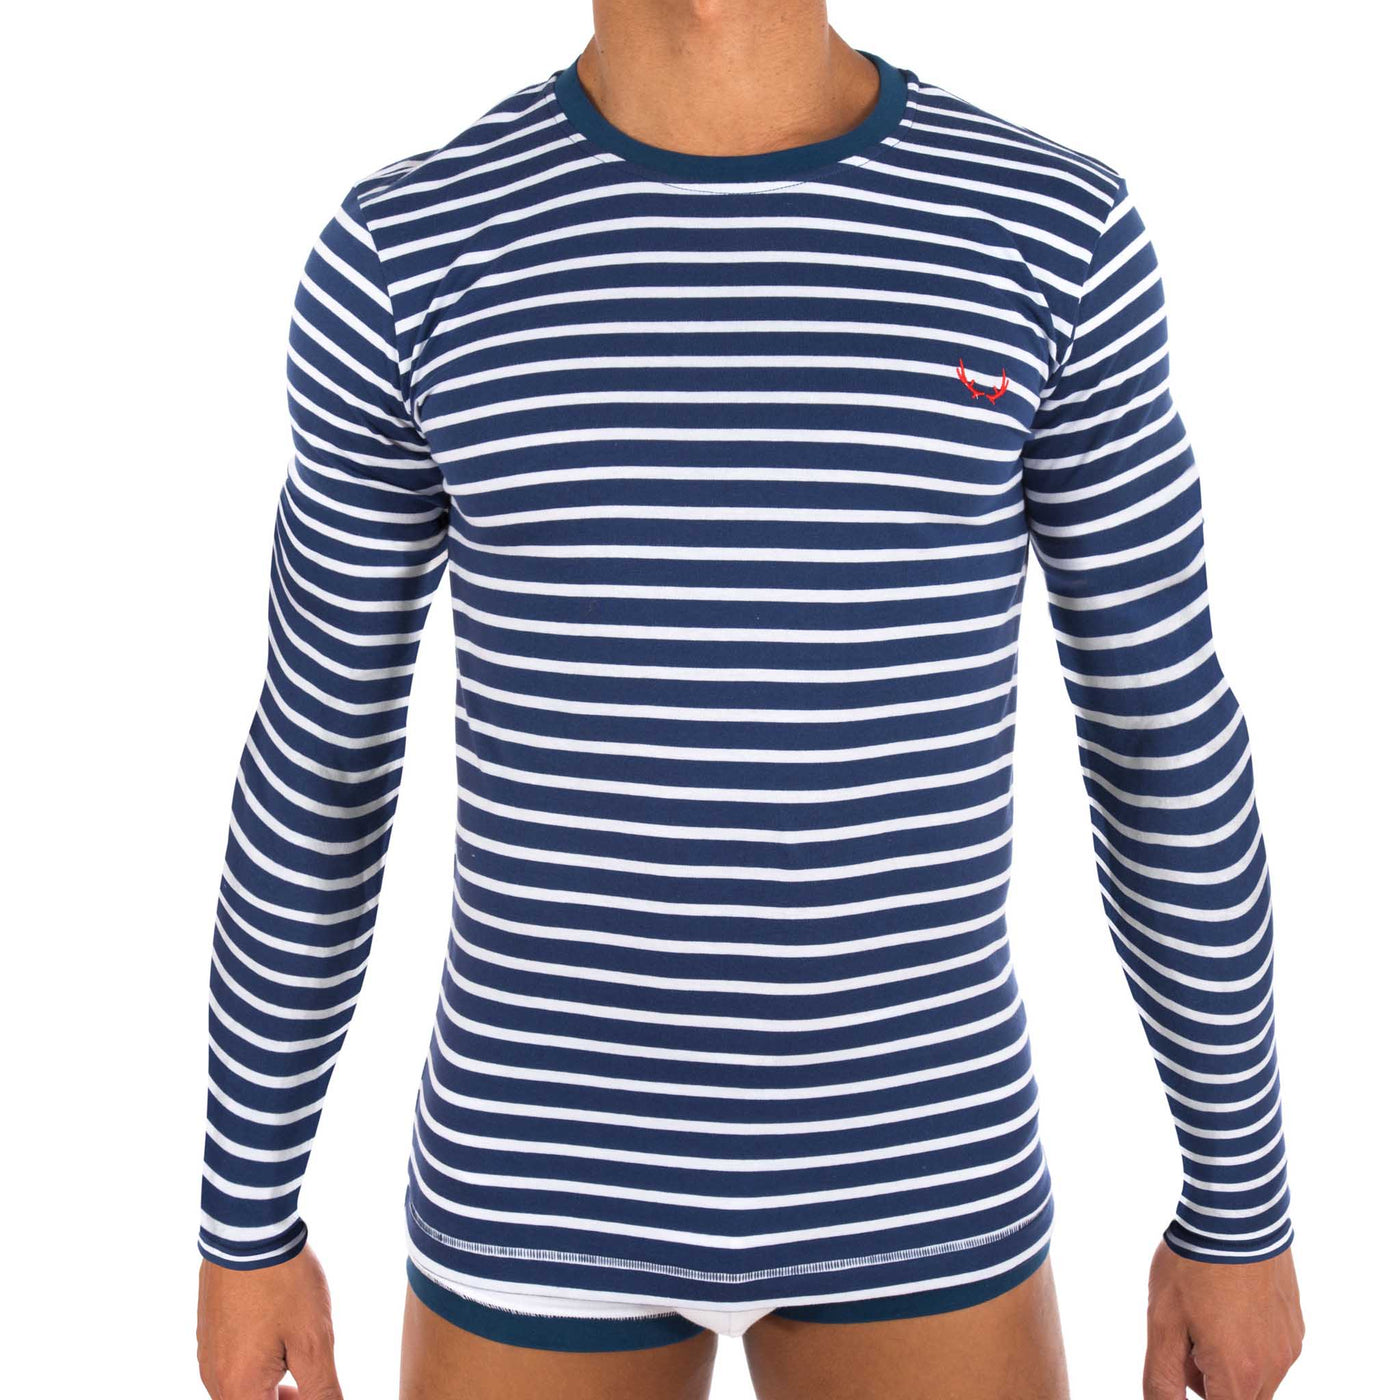 Long sleeves navy T-shirt for men - white stripes